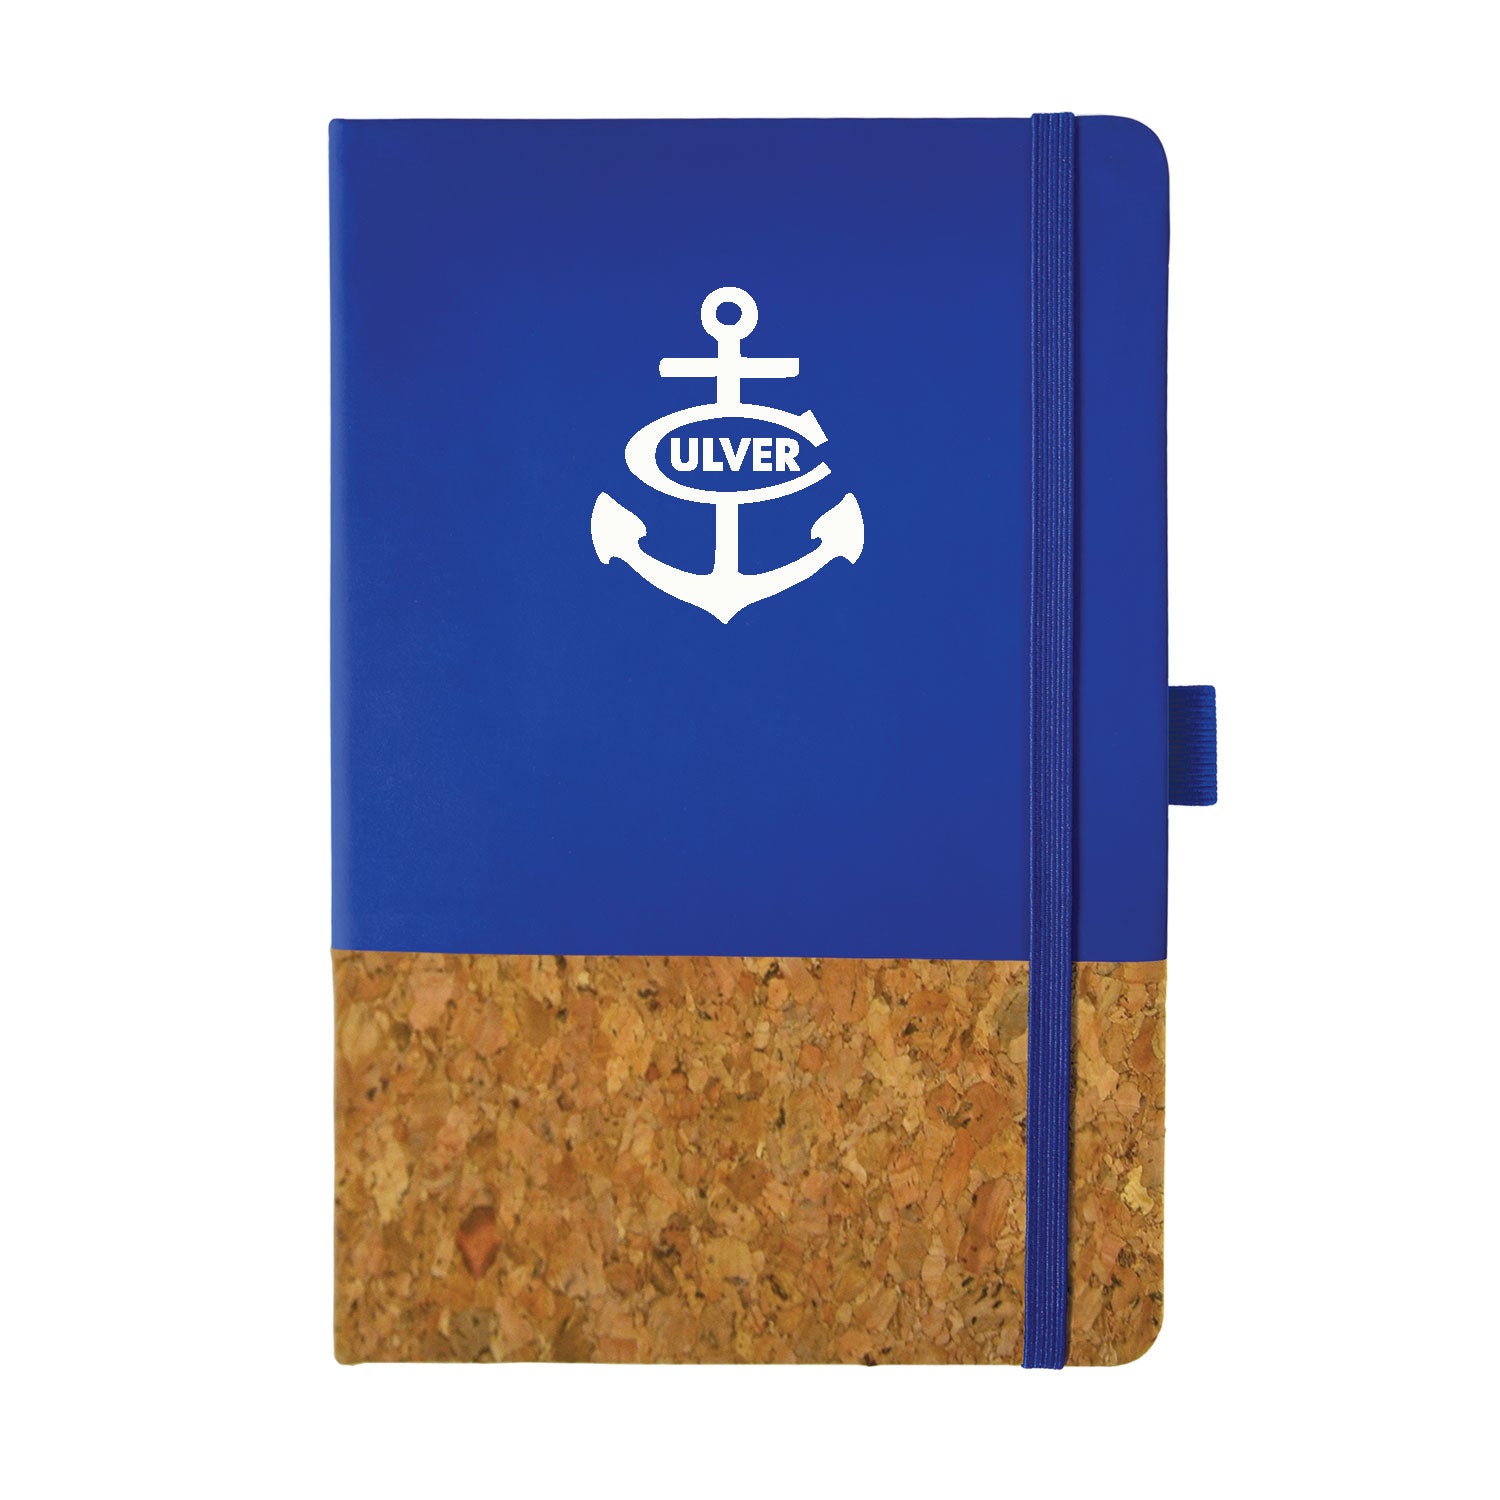 Culver Anchor Feeling Corky Journal - Royal Blue